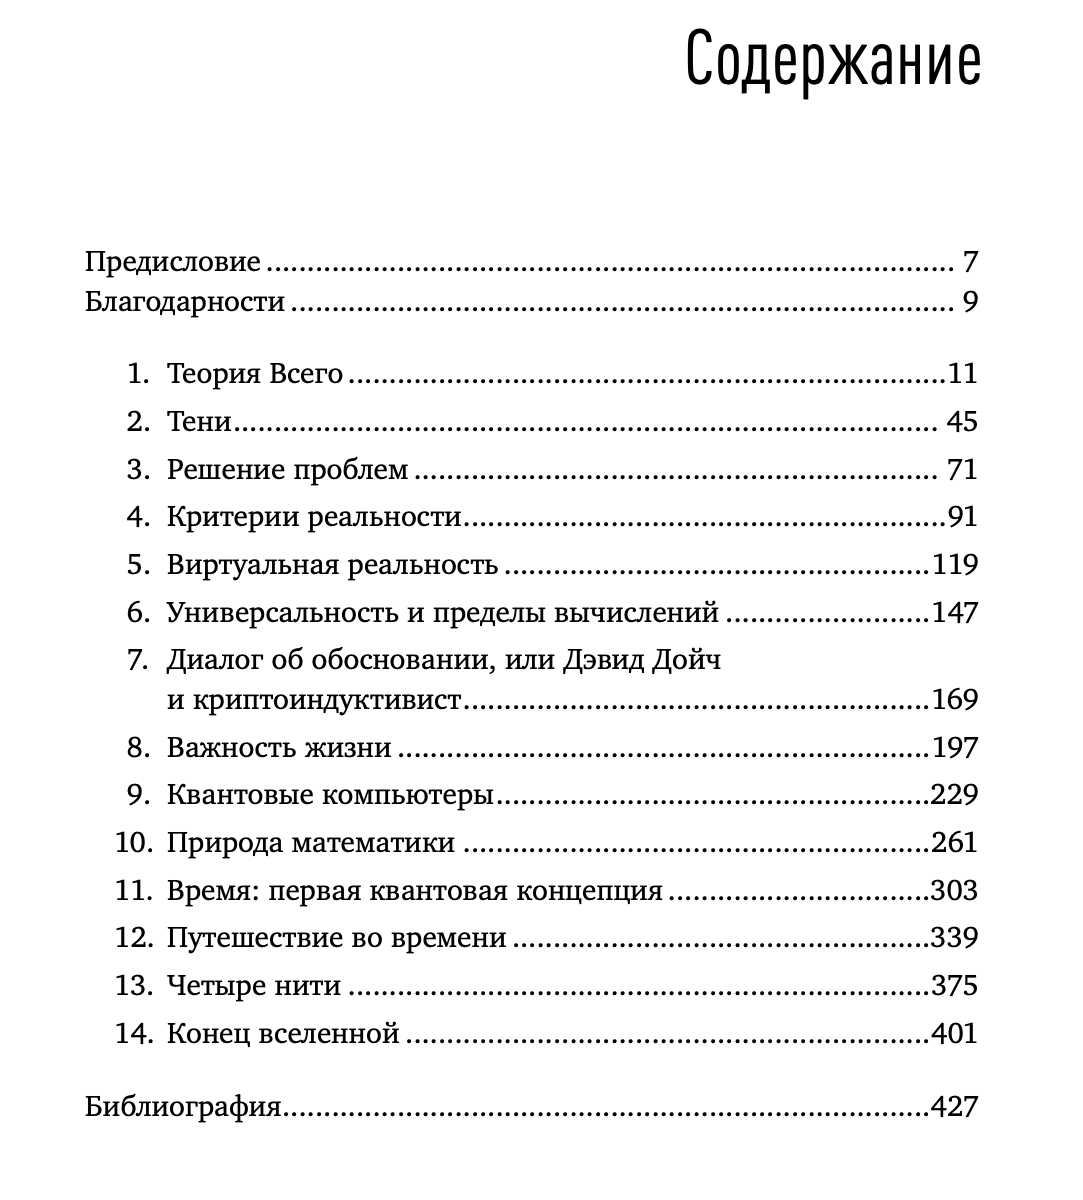 Оглавление к русскому изданию